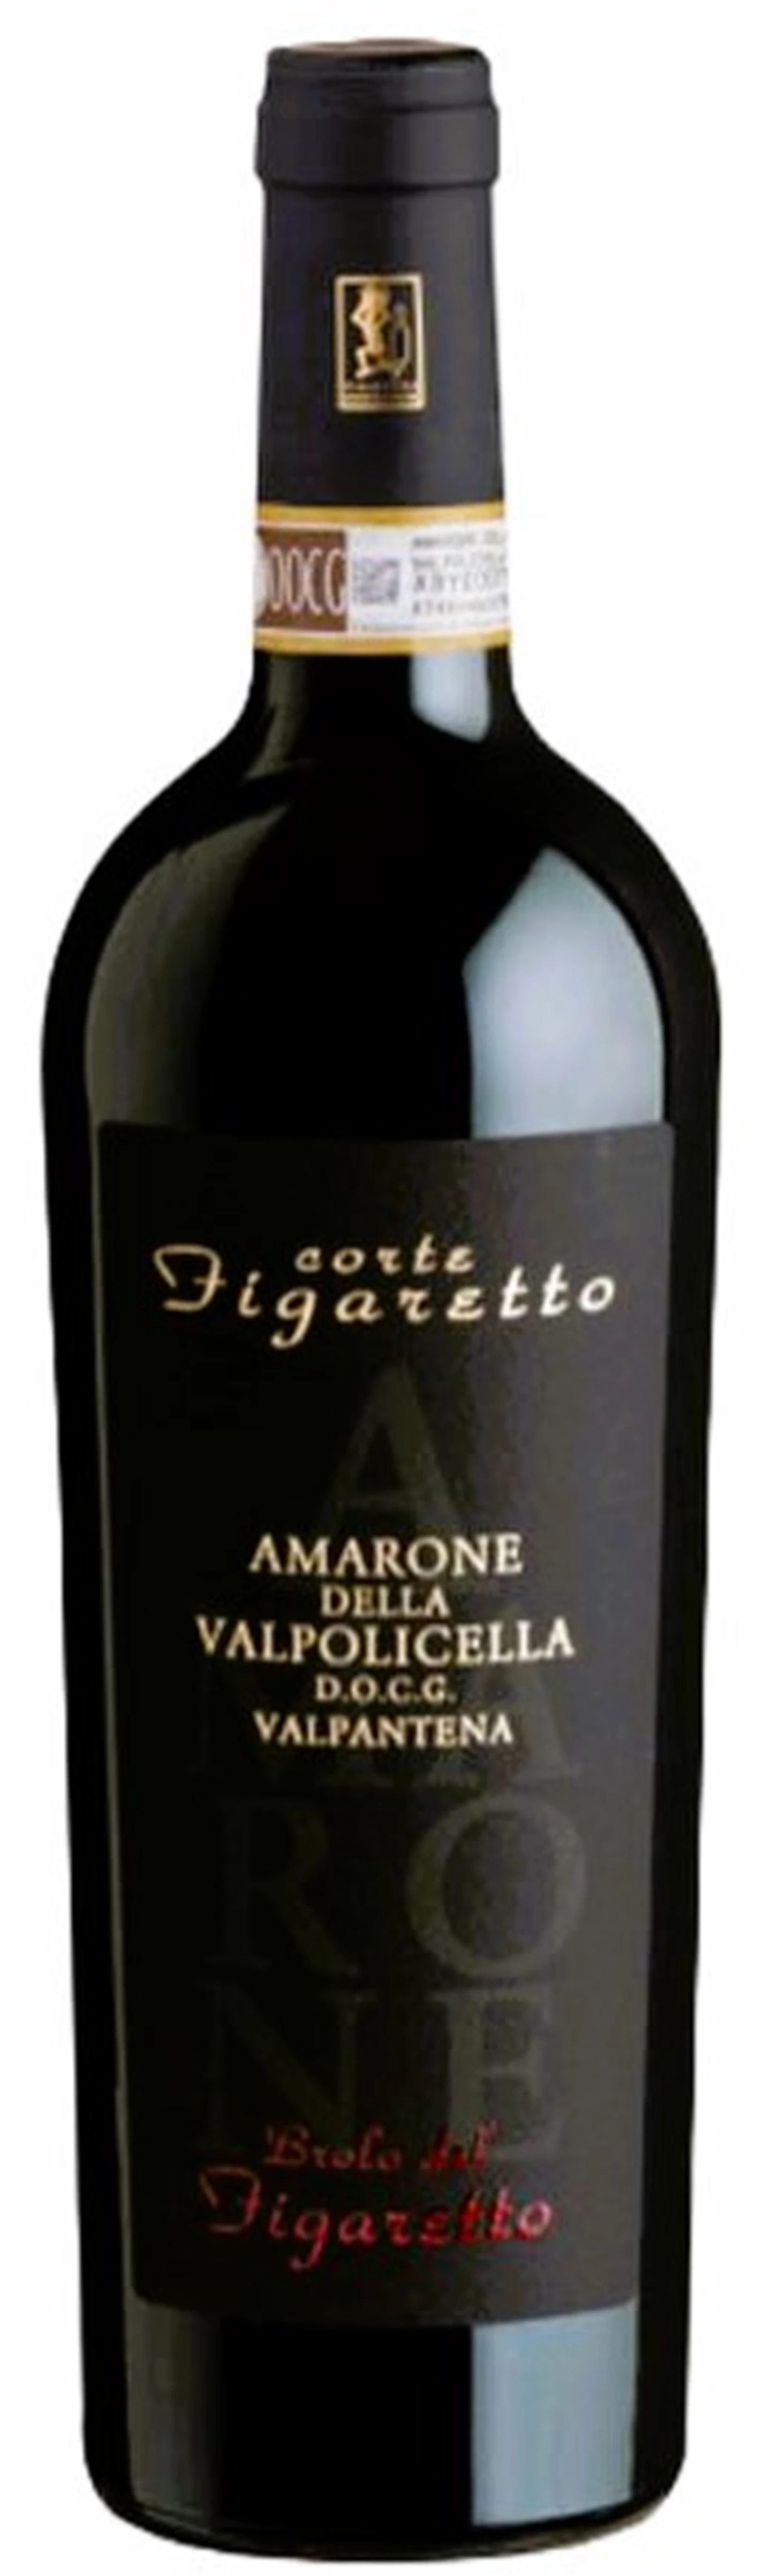 Corte Figaretto Amarone Brolo New Label 19